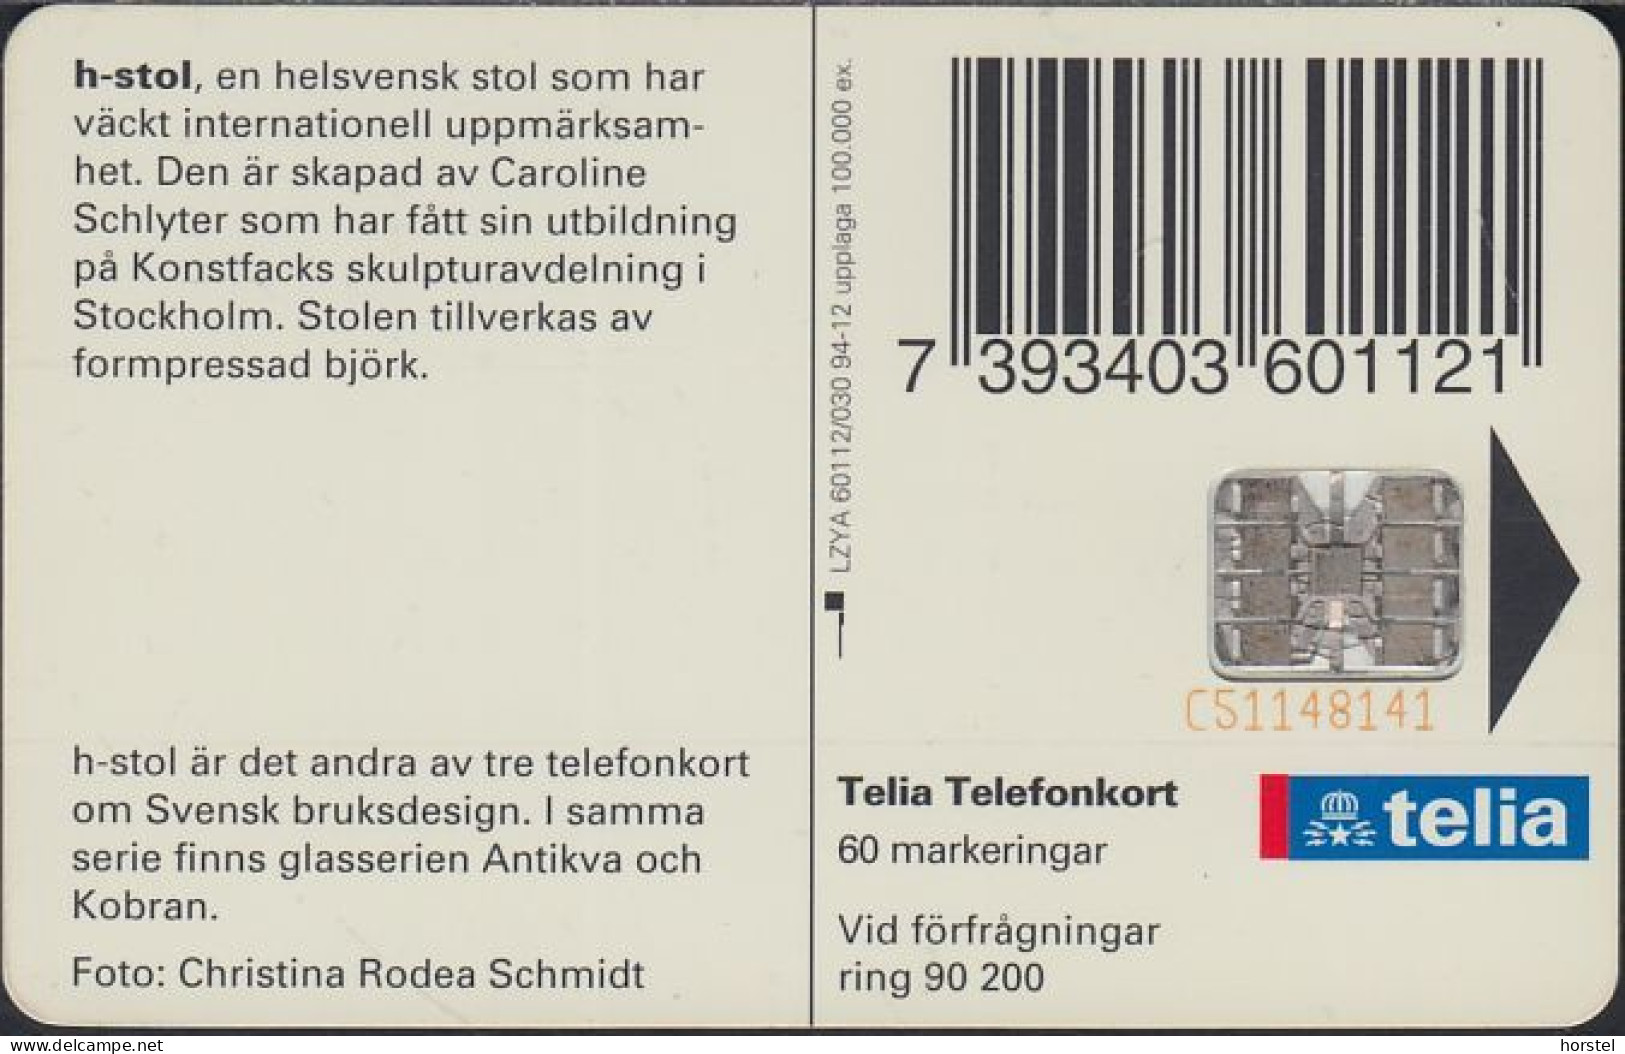 Schweden Chip 093  Design - H-shaped Chair - Stuhl  (60112/030) Red BN C51148141 - Suecia